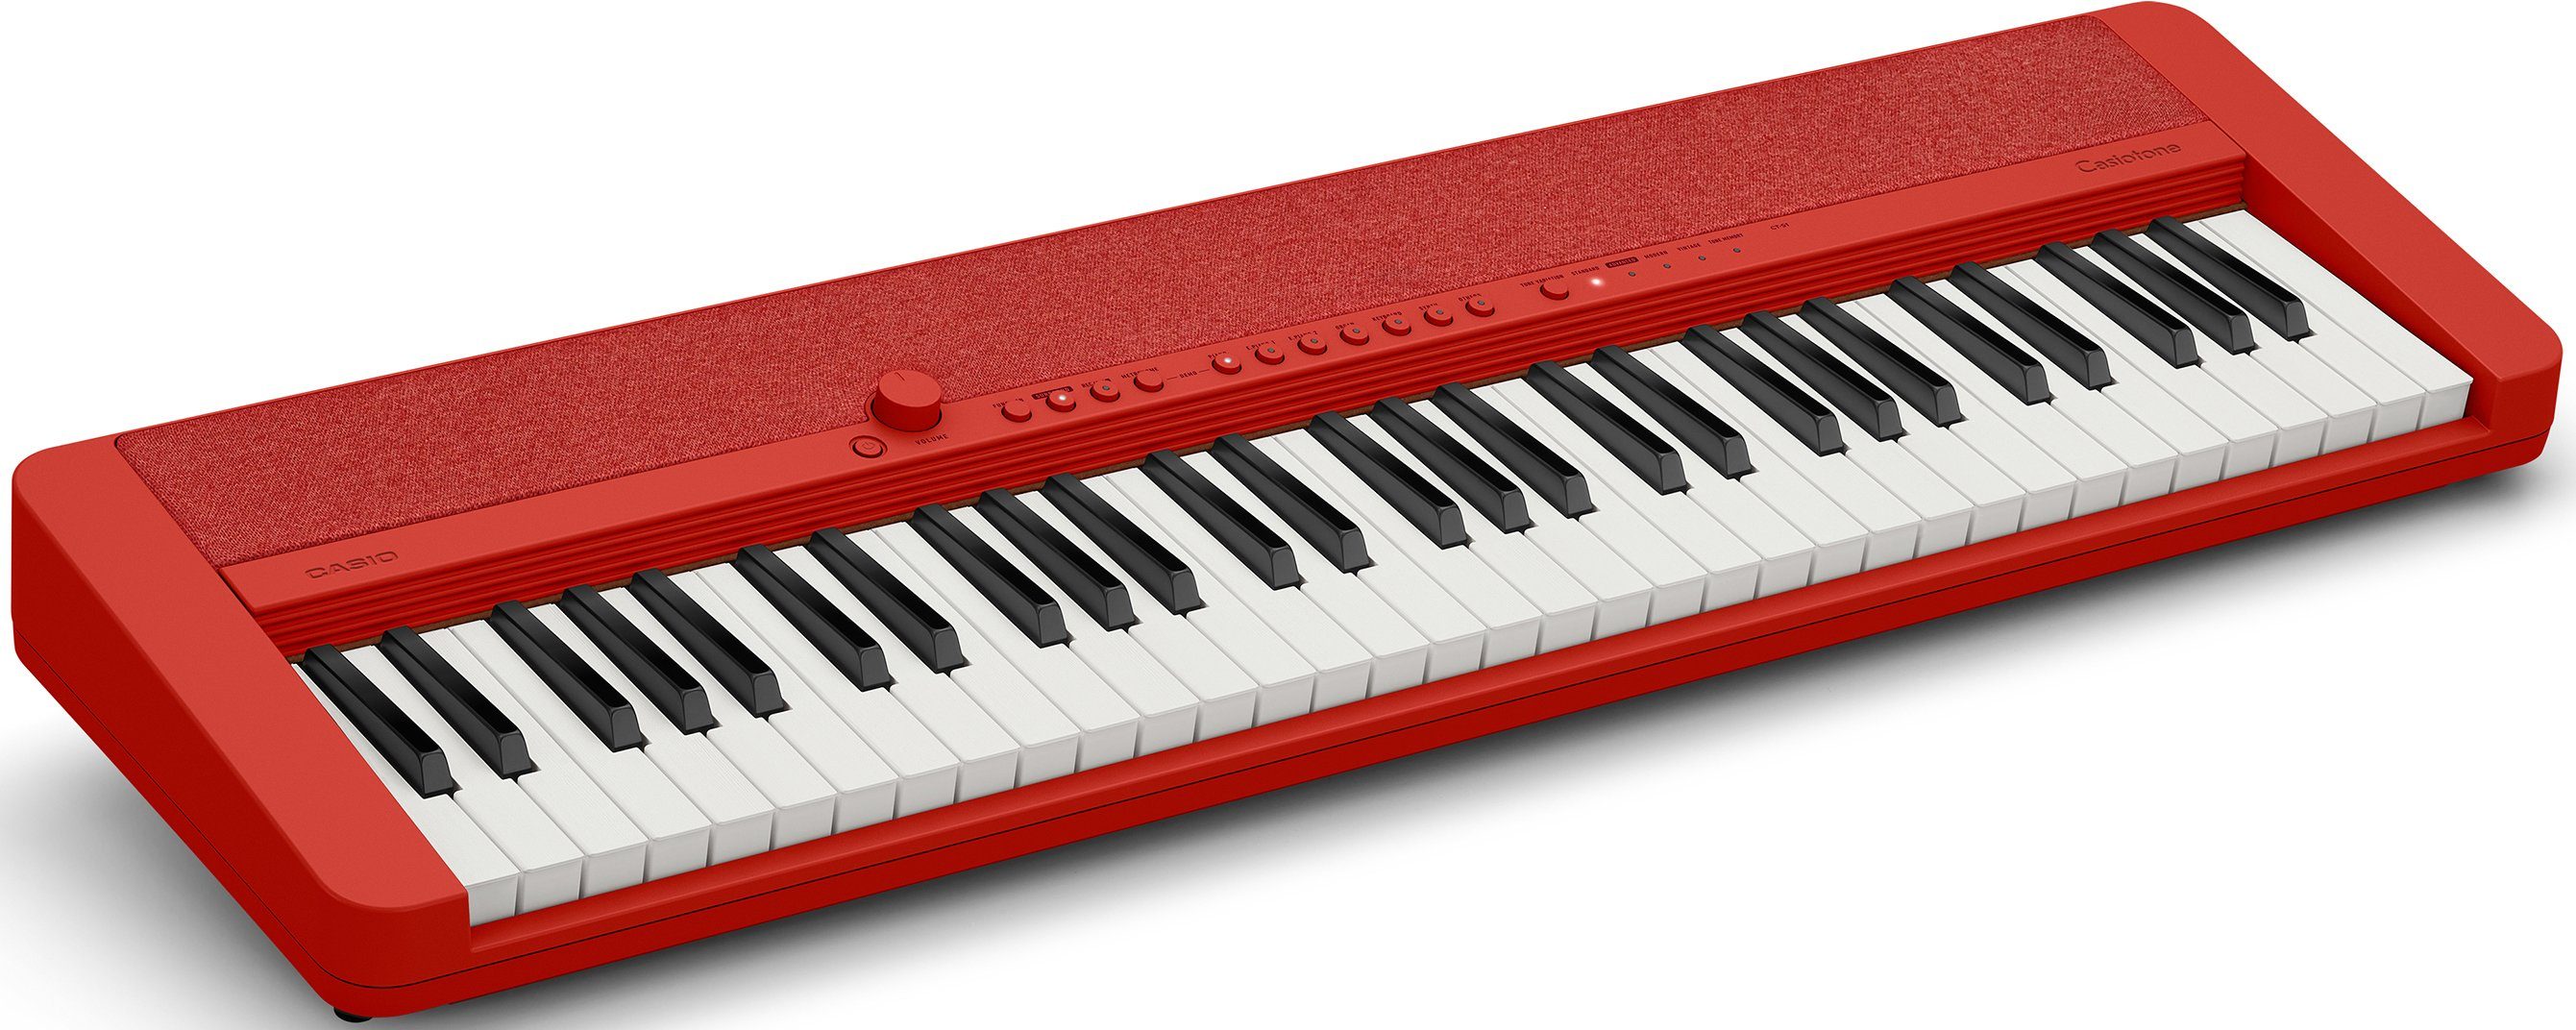 CT-S1RDSP, ideal Home-Keyboard CASIO und Klanggourmets Piano-Keyboard, für Piano-Einsteiger